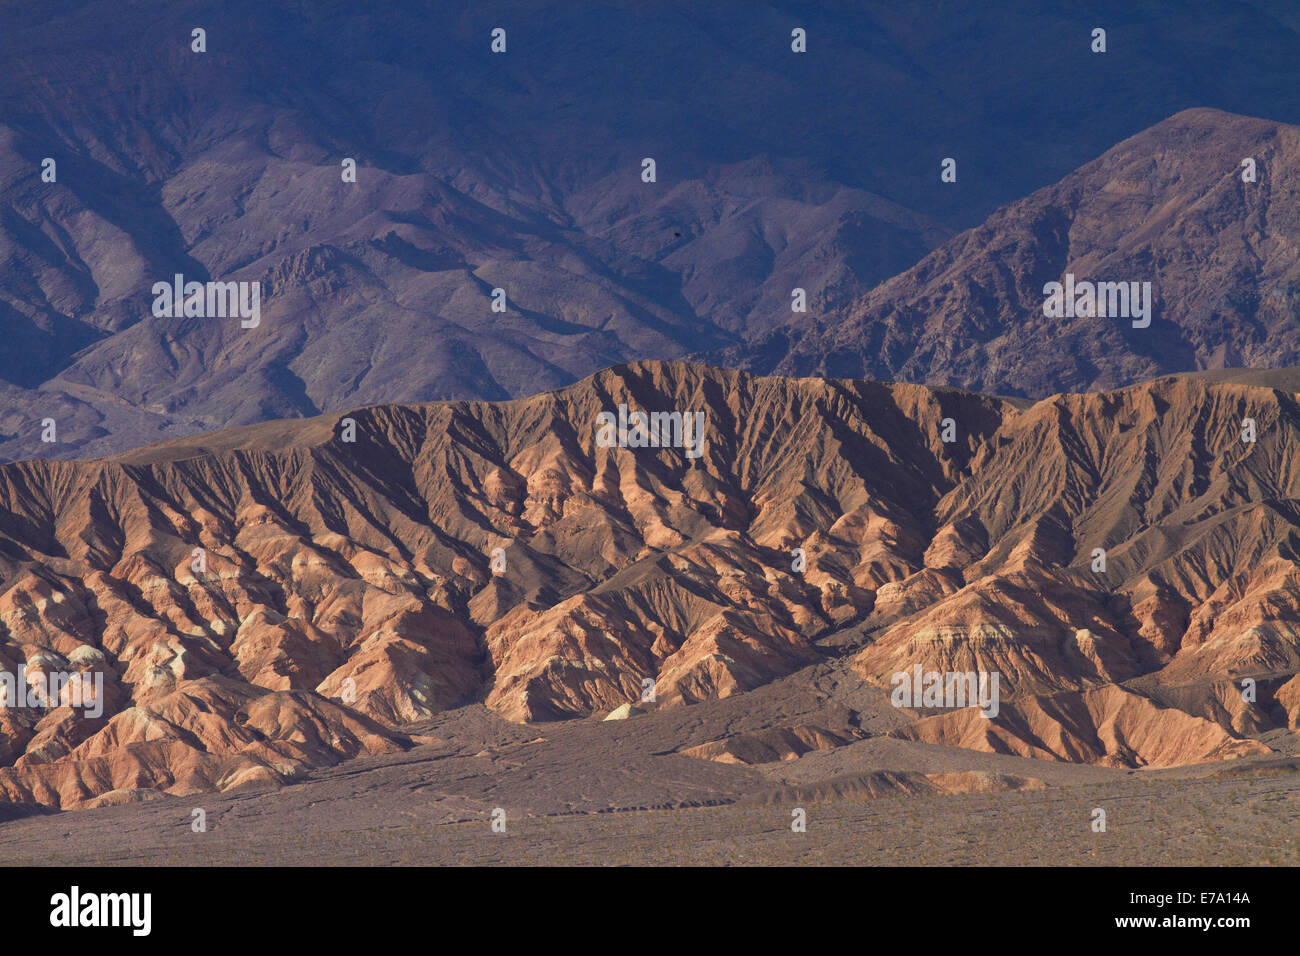 Grapevine Mountains, Amargosa Range, près de Stovepipe Wells, Death Valley National Park, désert de Mojave, Californie, USA Banque D'Images